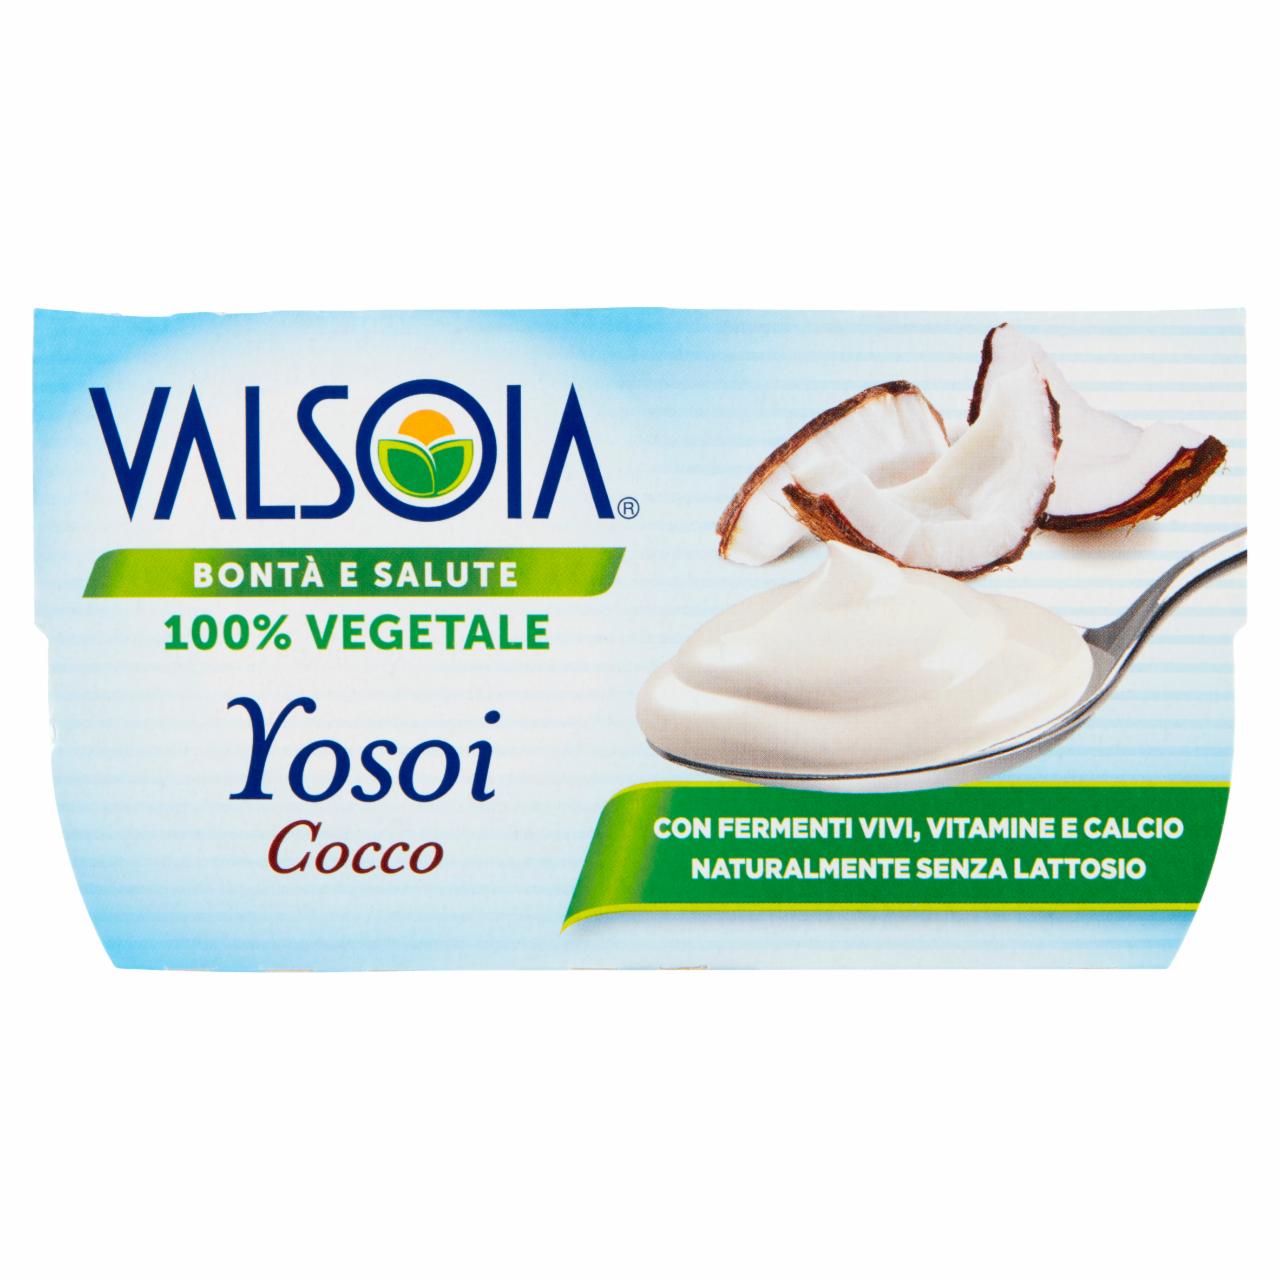 Zdjęcia - Valsoia Yosoi Roślinny produkt sojowy kokos 250 g (2 x 125 g)